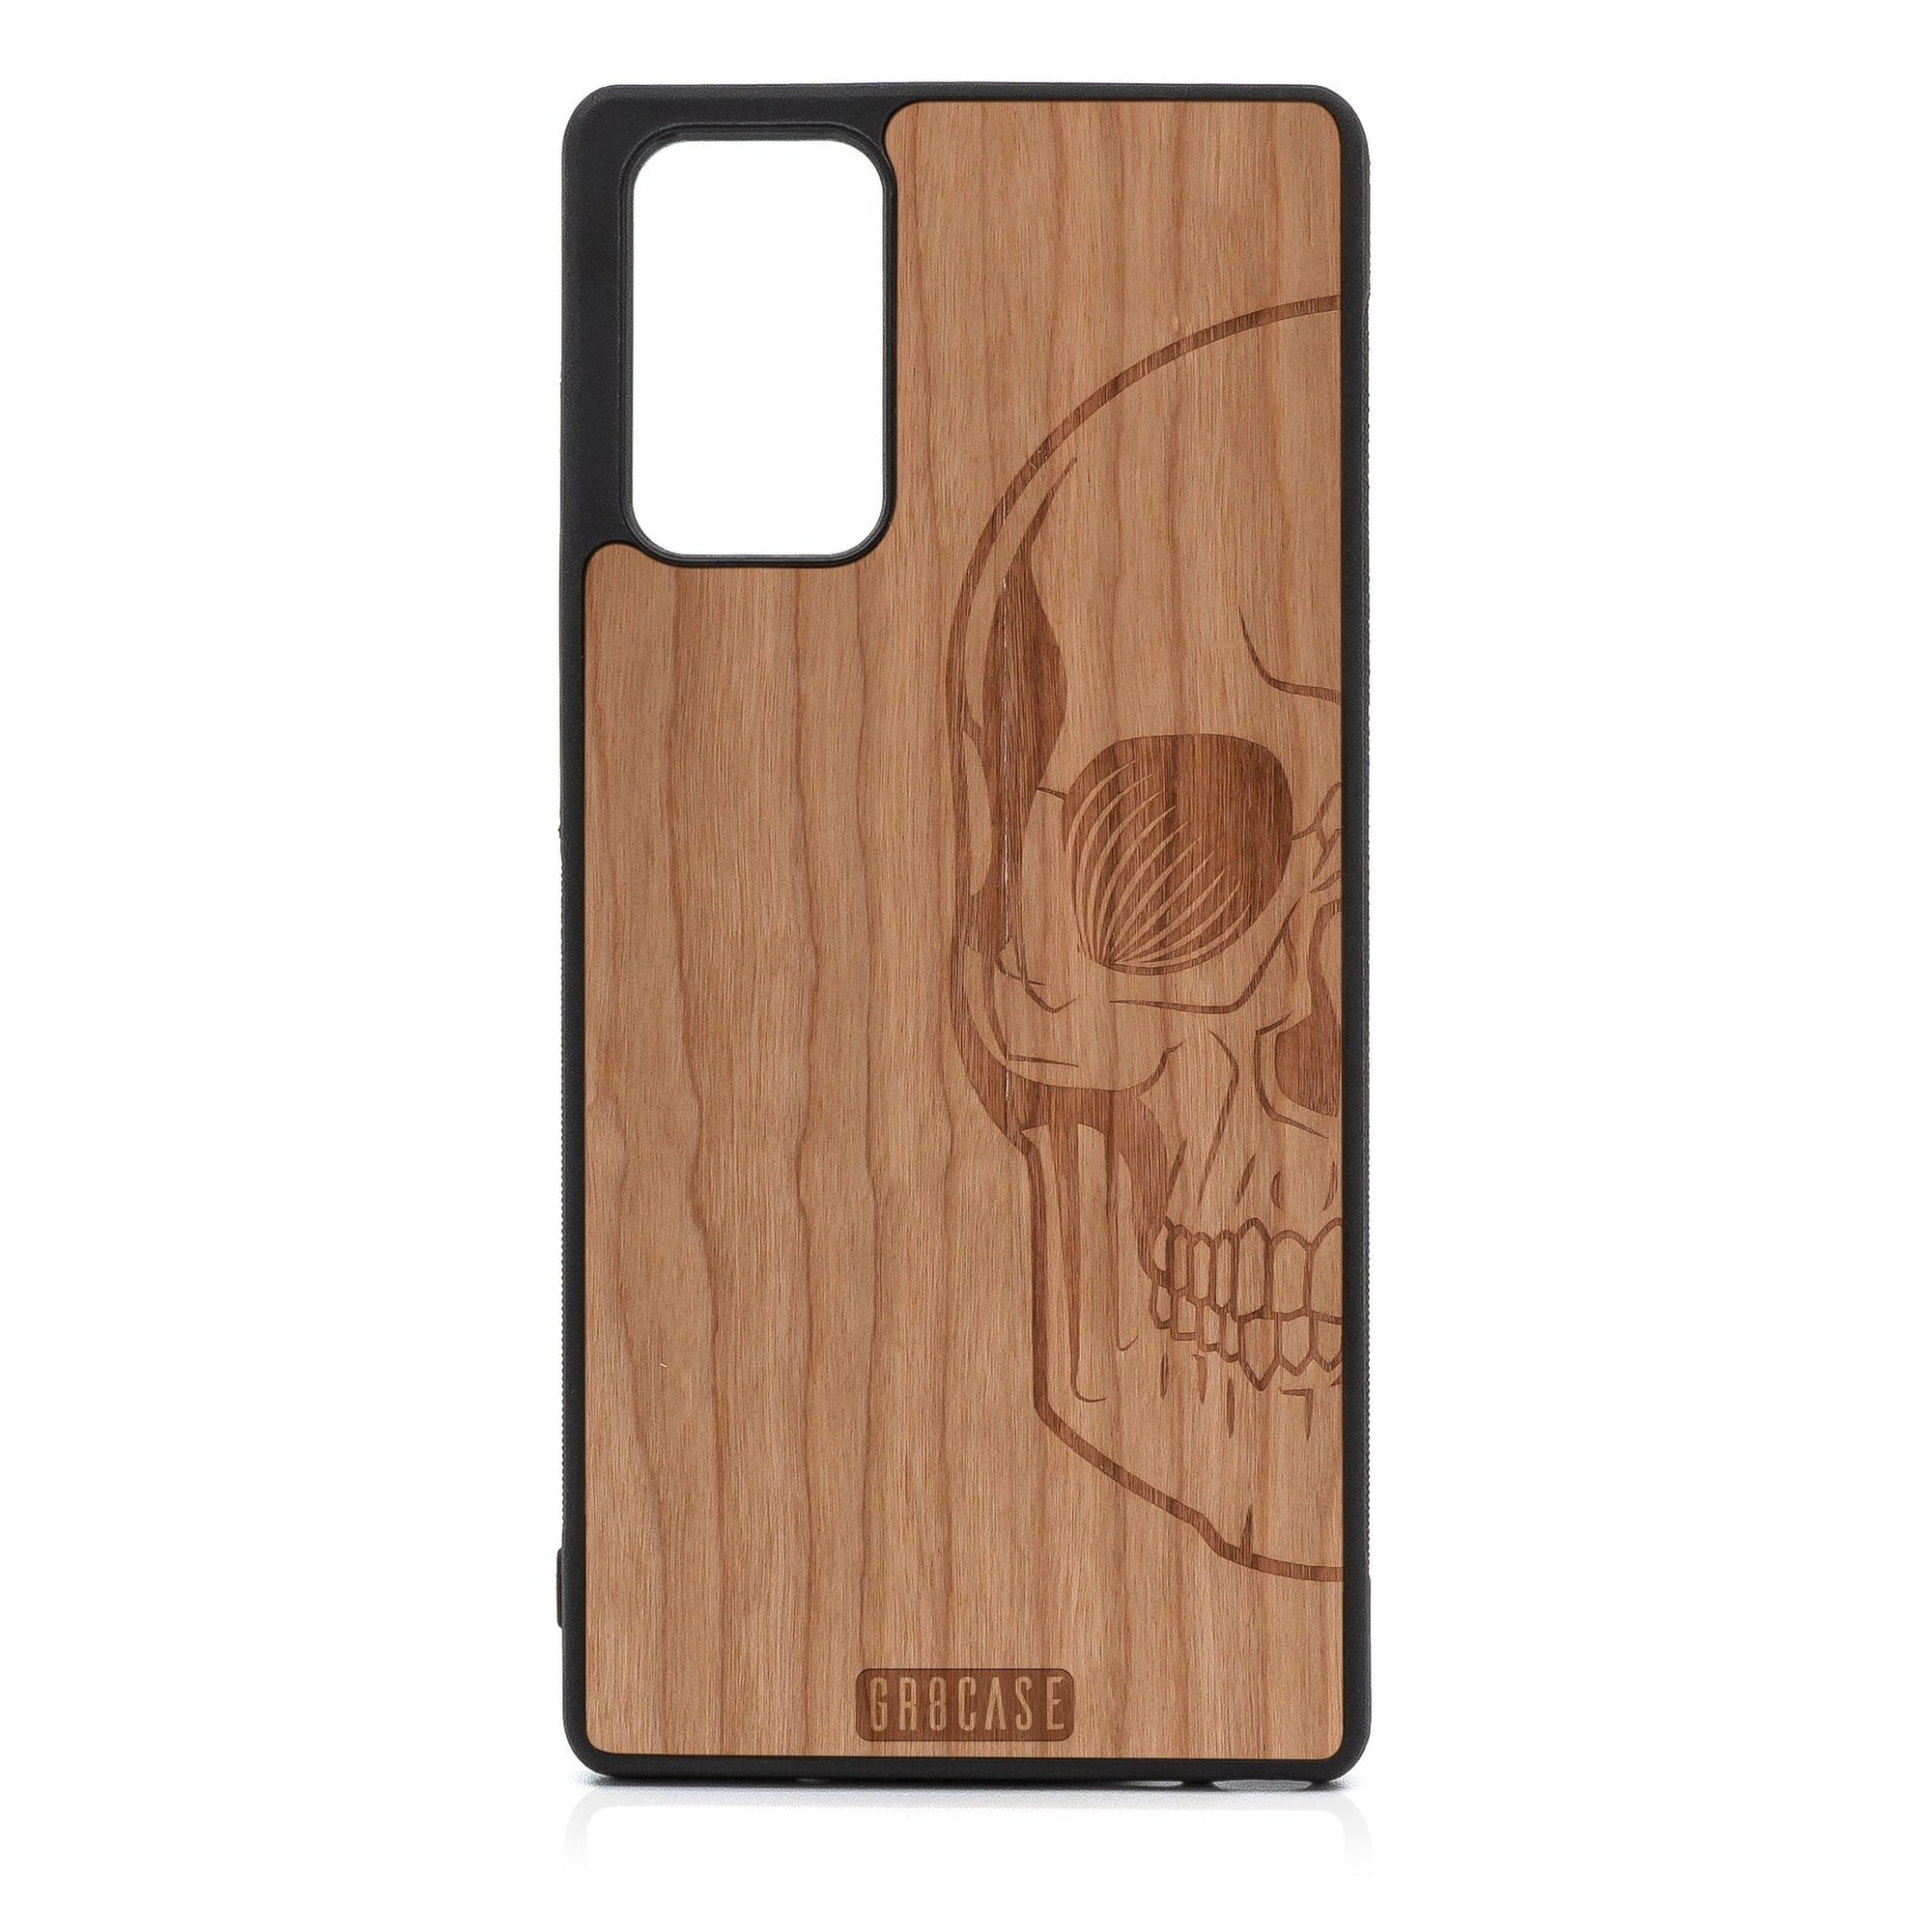 Half Skull Design Wood Case For Samsung Galaxy A71 5G